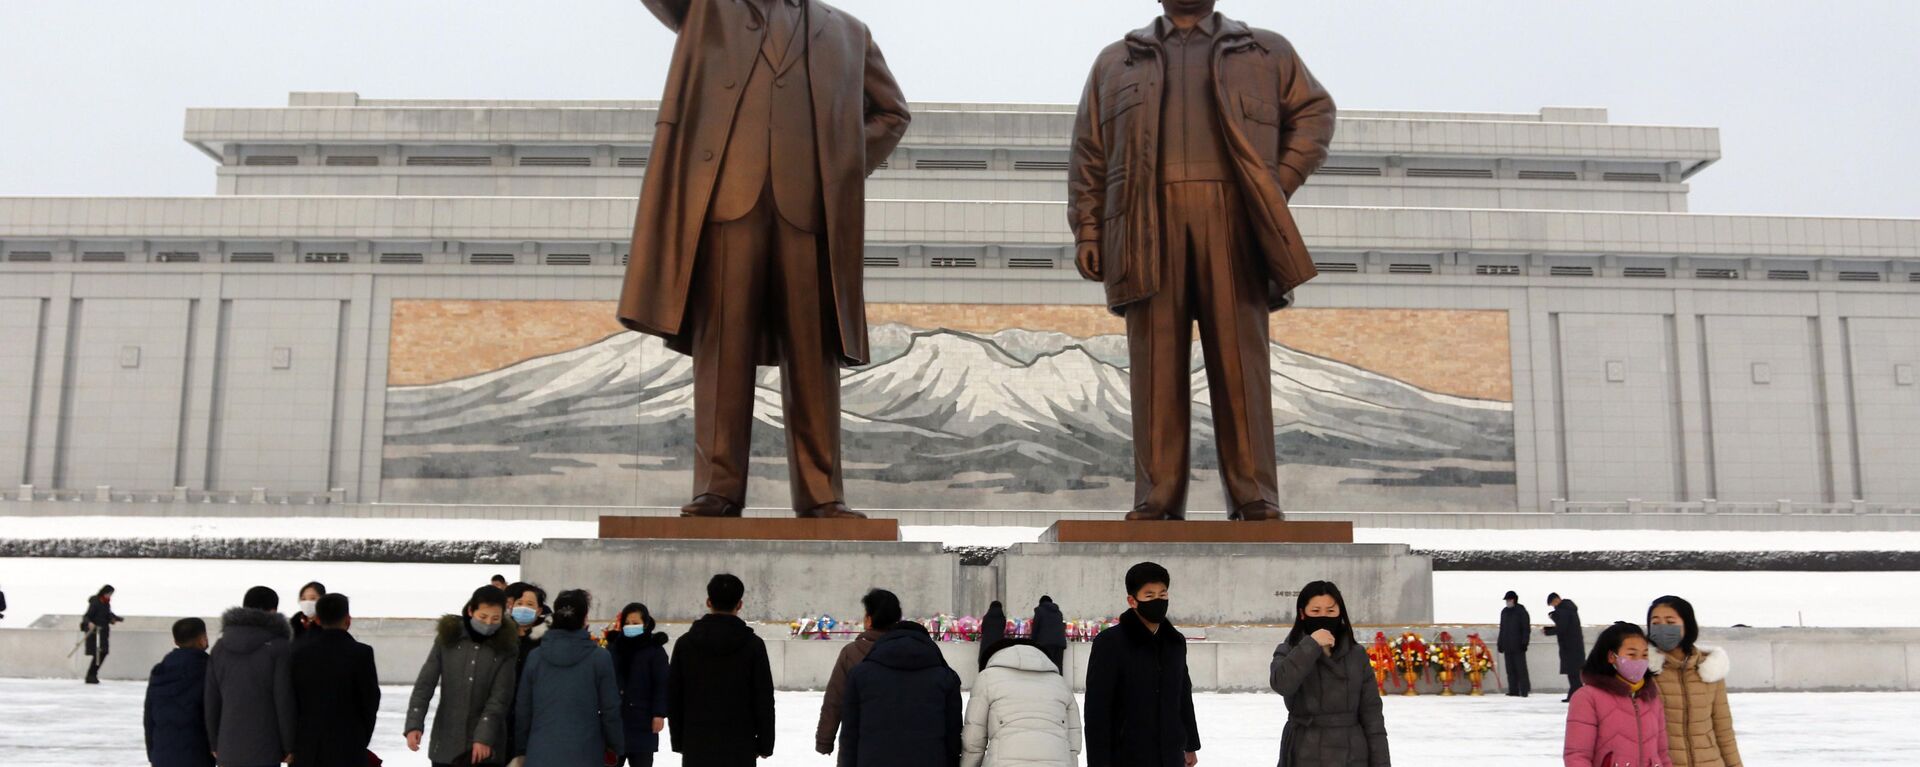 يزور الناس النصب التذكاري للقادة الكوريين الشماليين السابقين (كيم إيل سونغ، وكيم جونغ إيل في مانسو هيل في بيونغ يانغ)، بمناسبة عطلة رأس السنة القمرية الجديدة، كوريا الشمالية 1 فبراير 2022. - سبوتنيك عربي, 1920, 26.06.2022